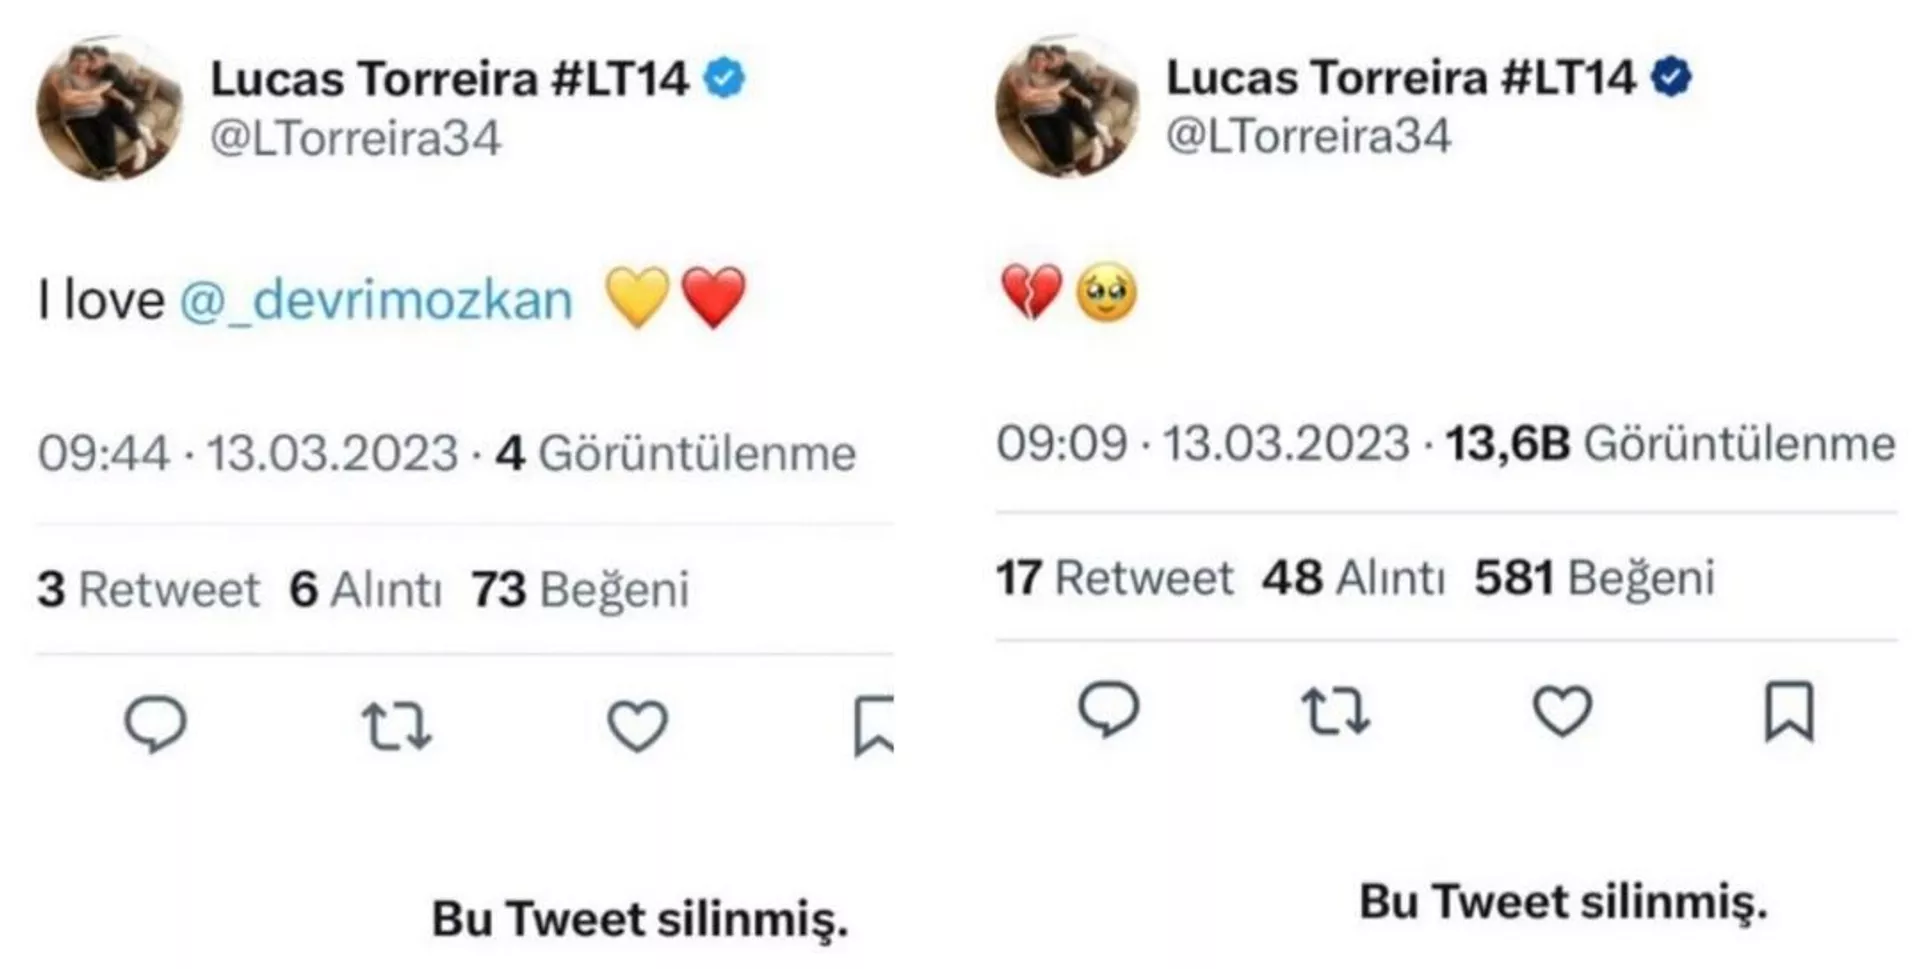 Lucas Torreira, oyuncu Devrim Özkan'a Twitter'da ilan-ı aşk etti, ardından hacklendiğini açıkladı - Sputnik Türkiye, 1920, 13.03.2023